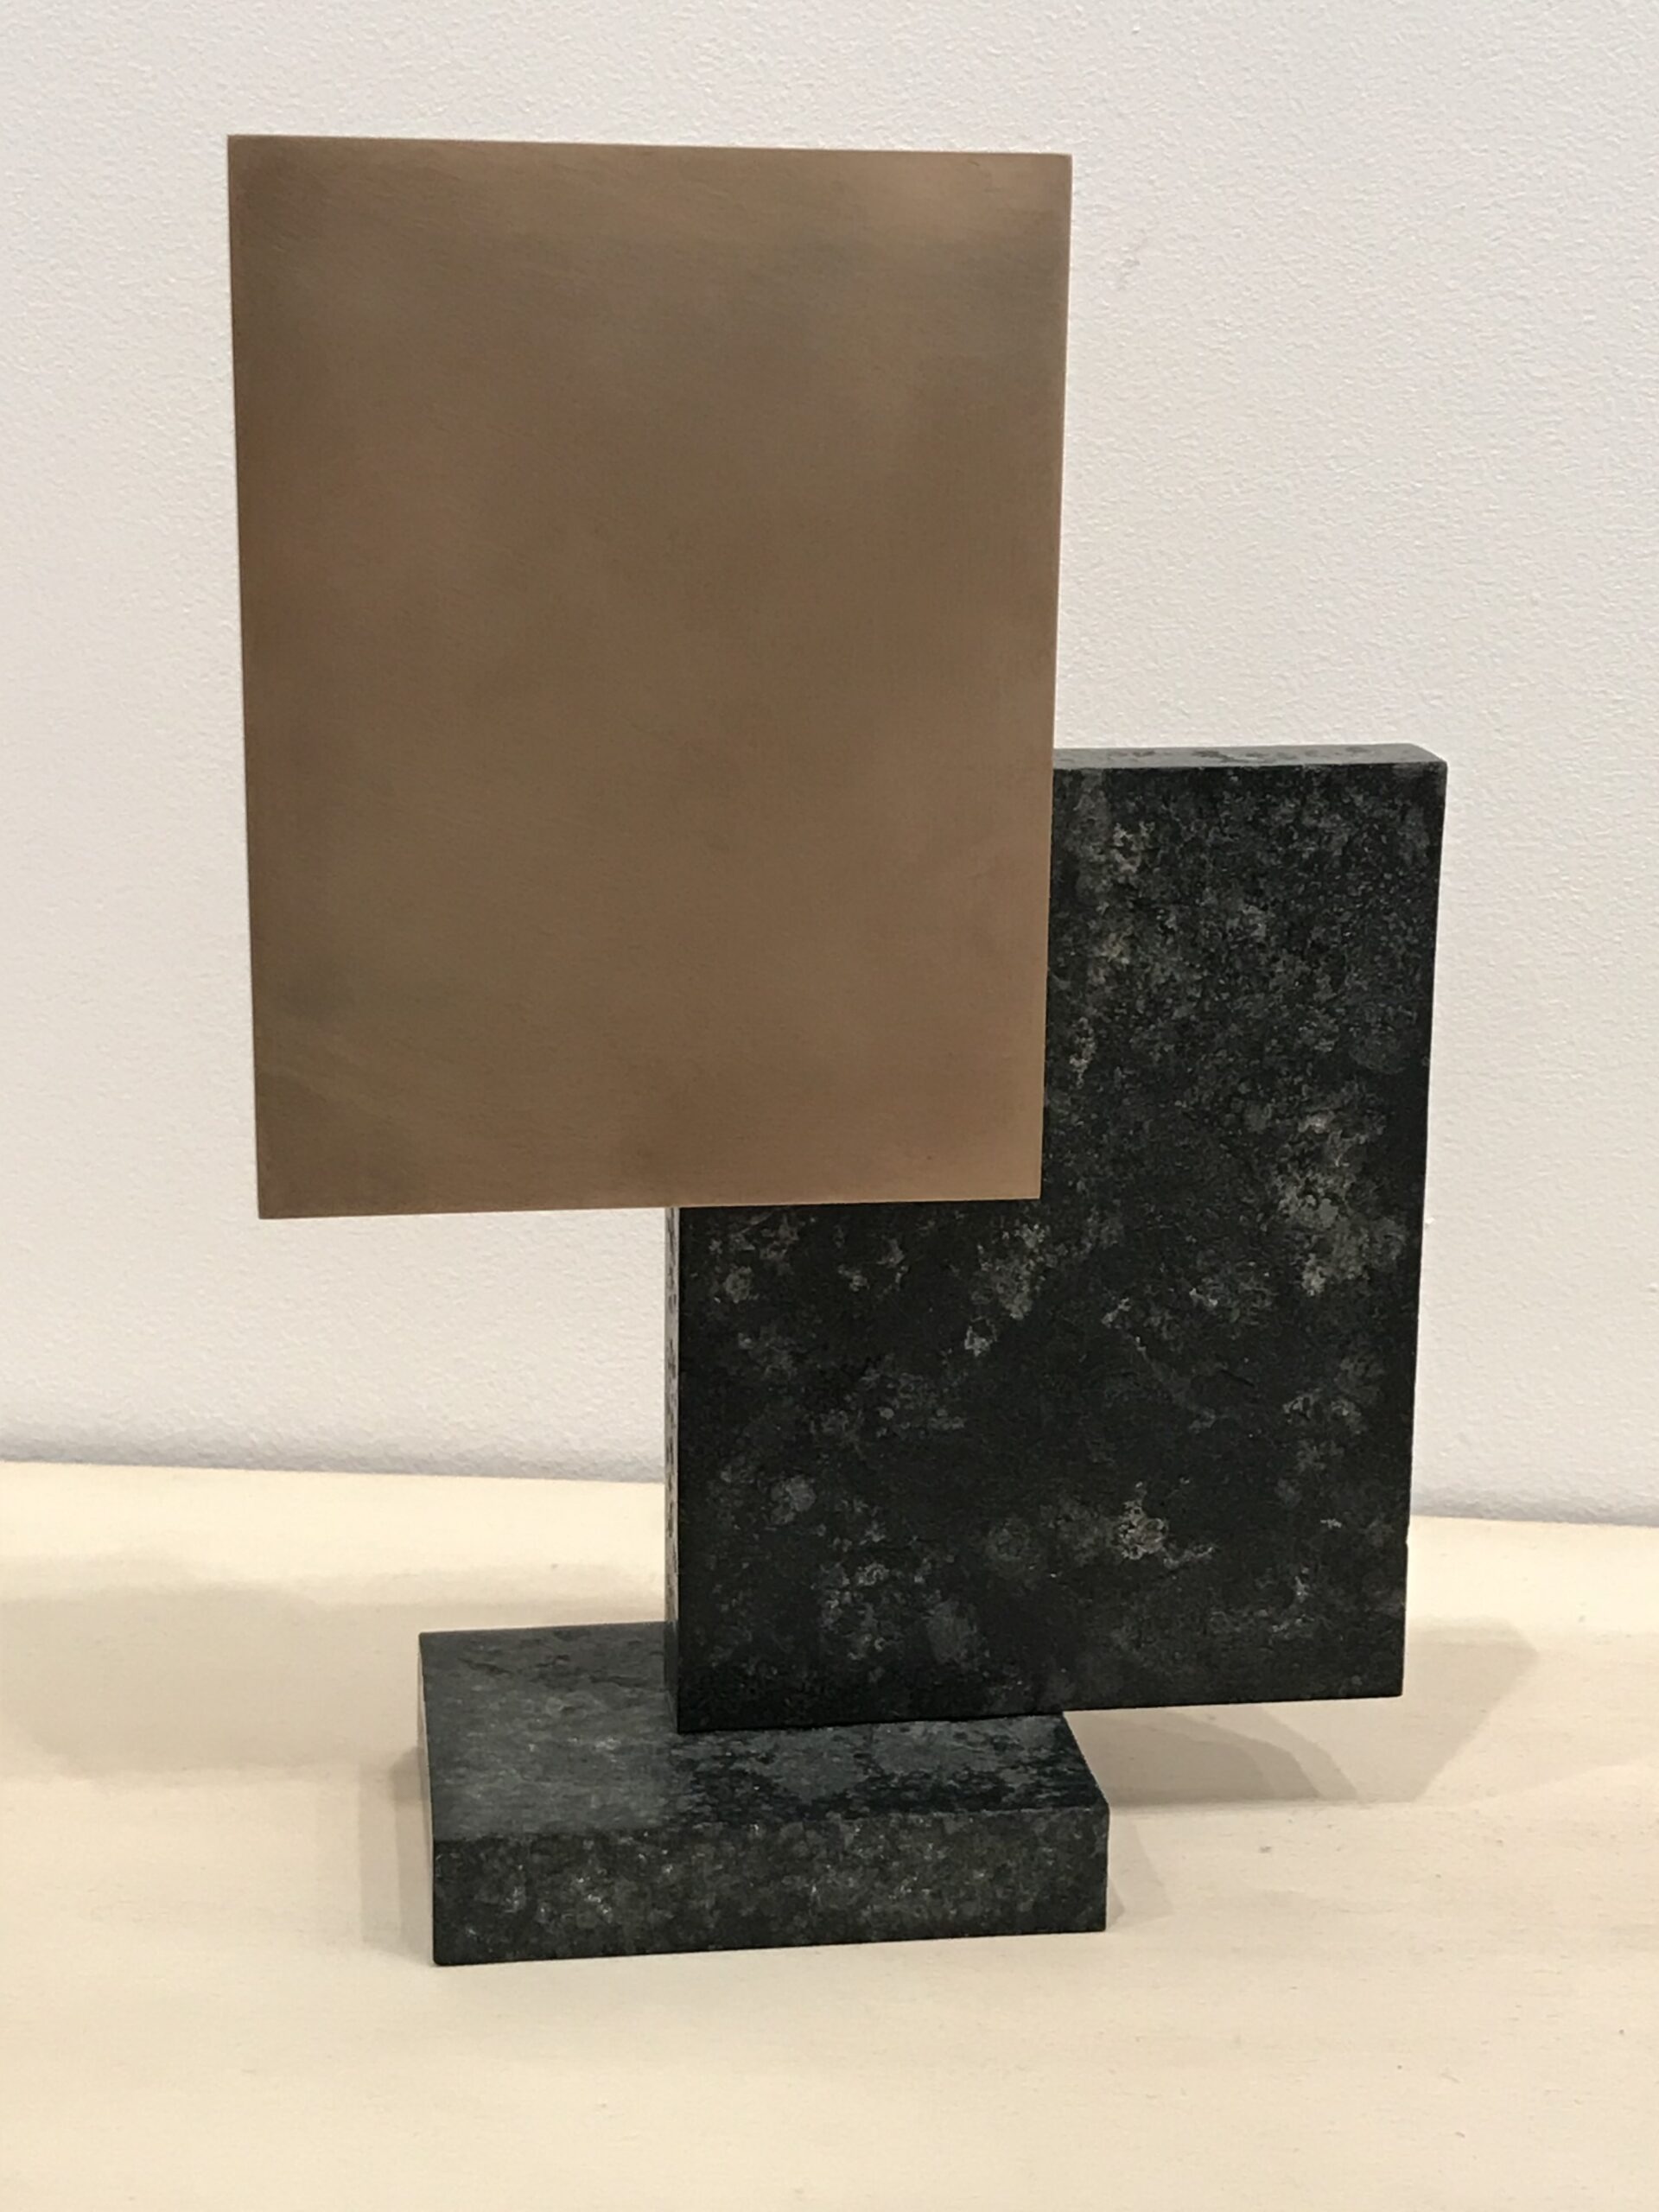 EA ST Verde ed20 25 2018 27x19x85cmBronze and german granite scaled Pigment Gallery Galería de Arte en Barcelona Enrique Asensi